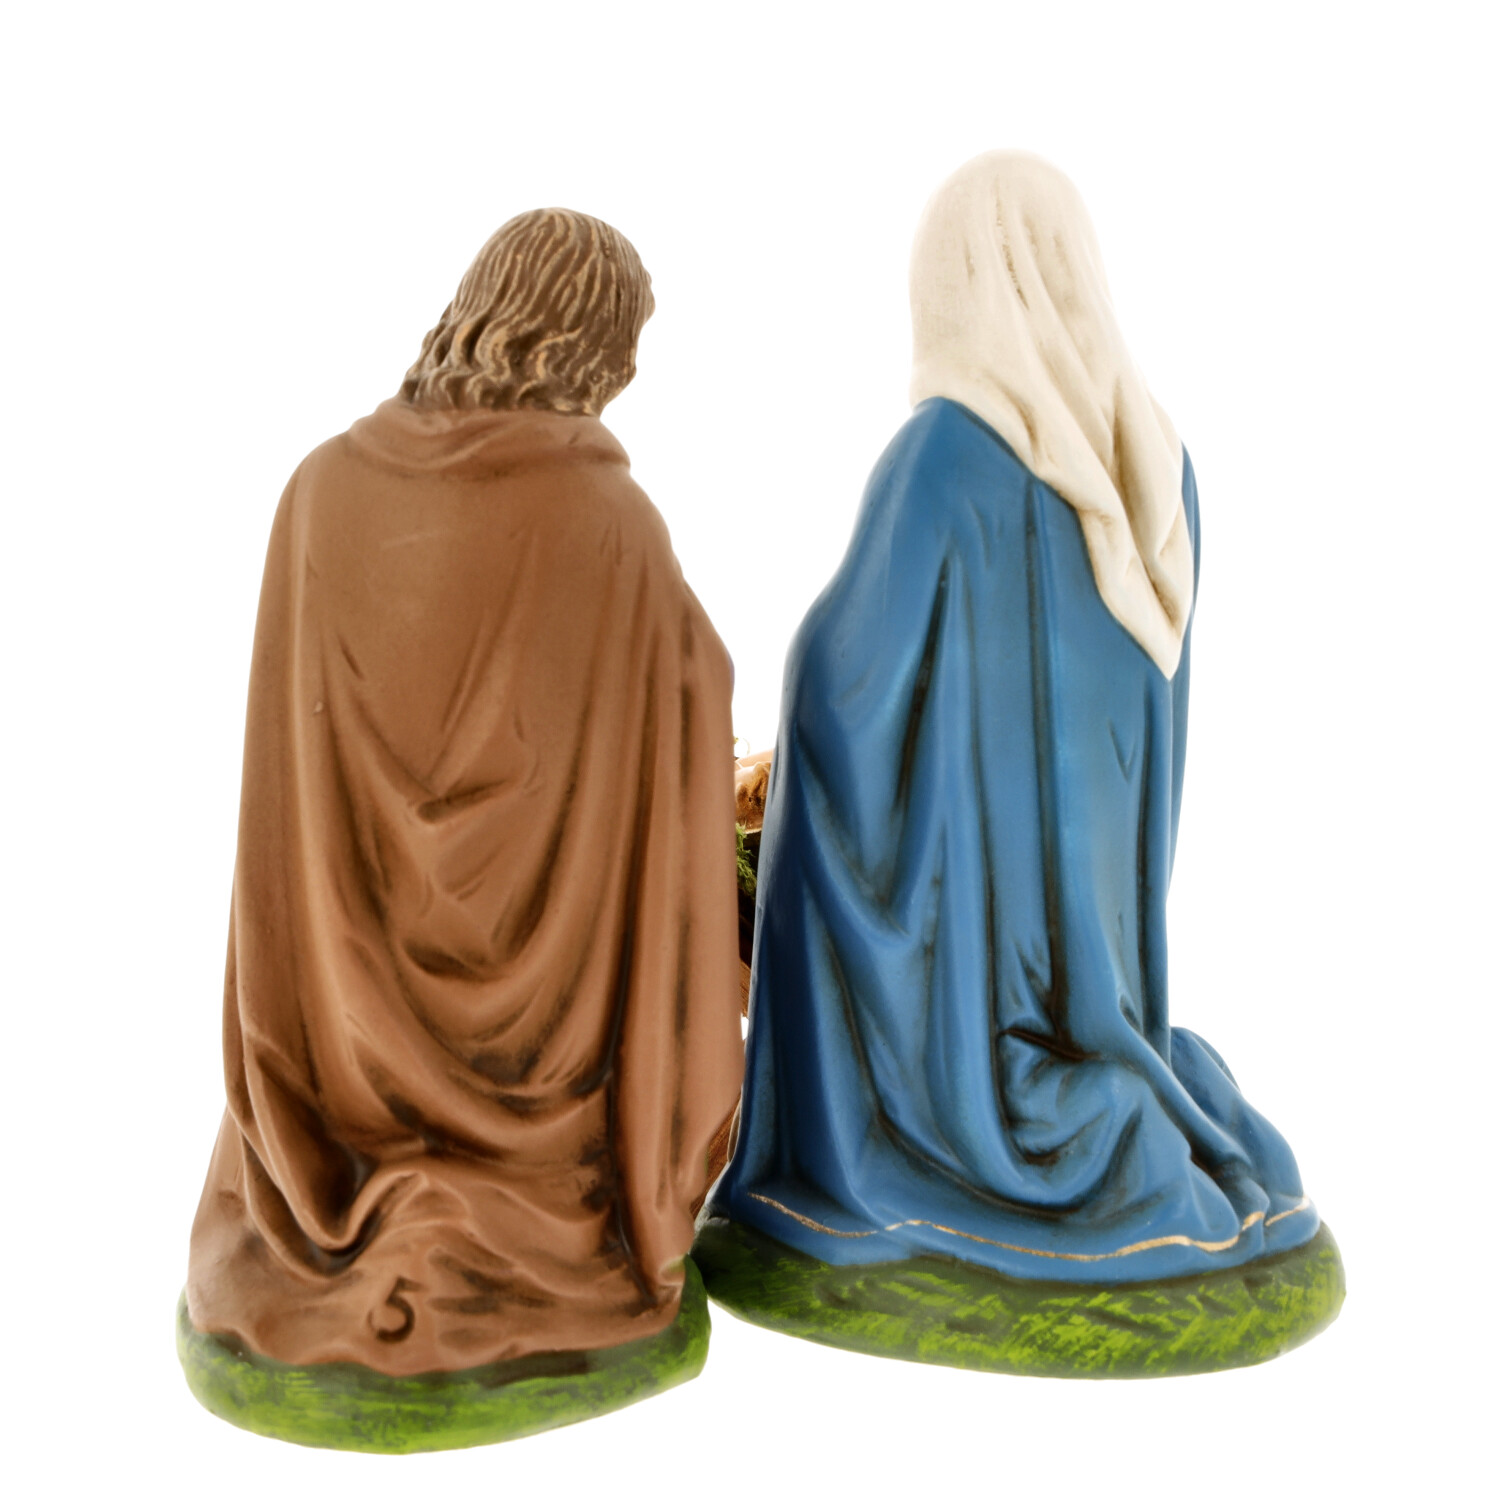 Holy family - Marolin Nativity figure - made in Germany